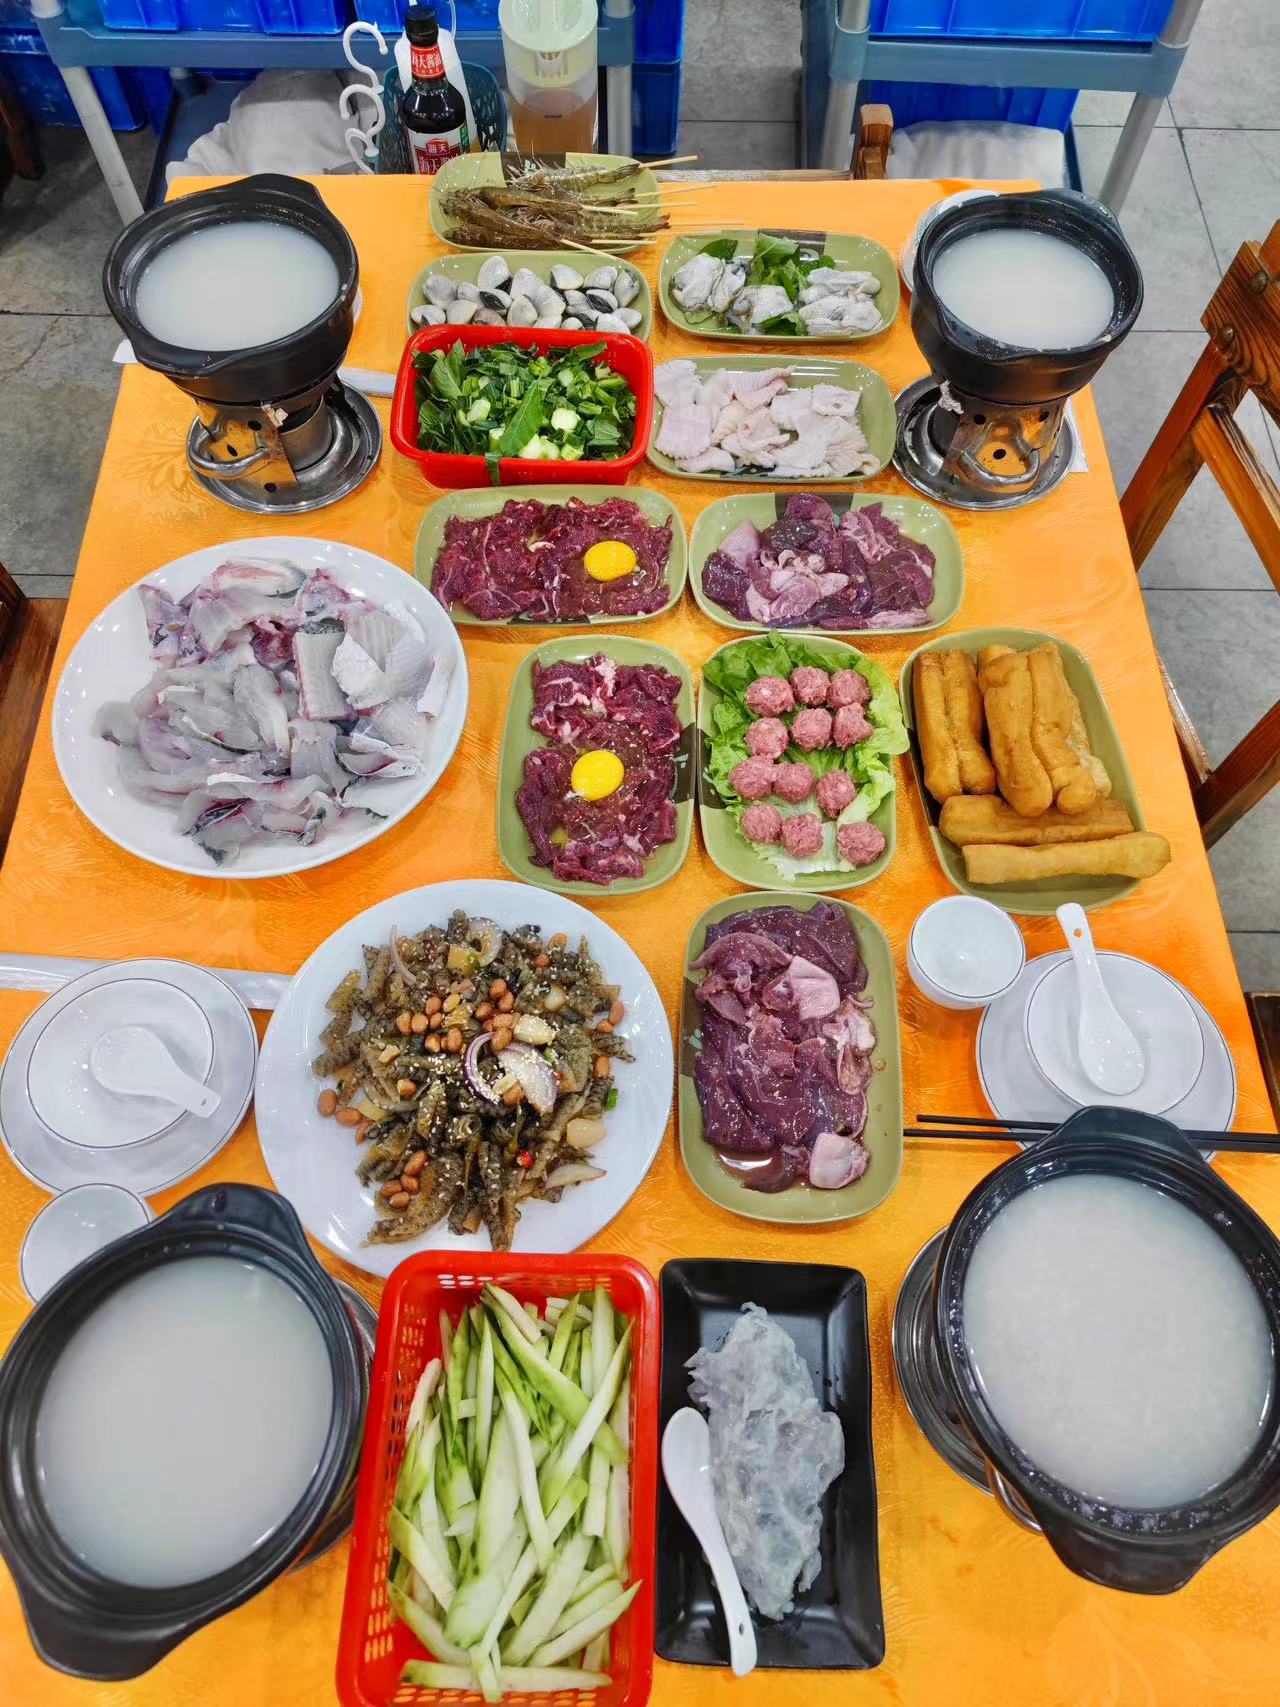 The Shunde congee hot pot Photo: Zhang Han/GT